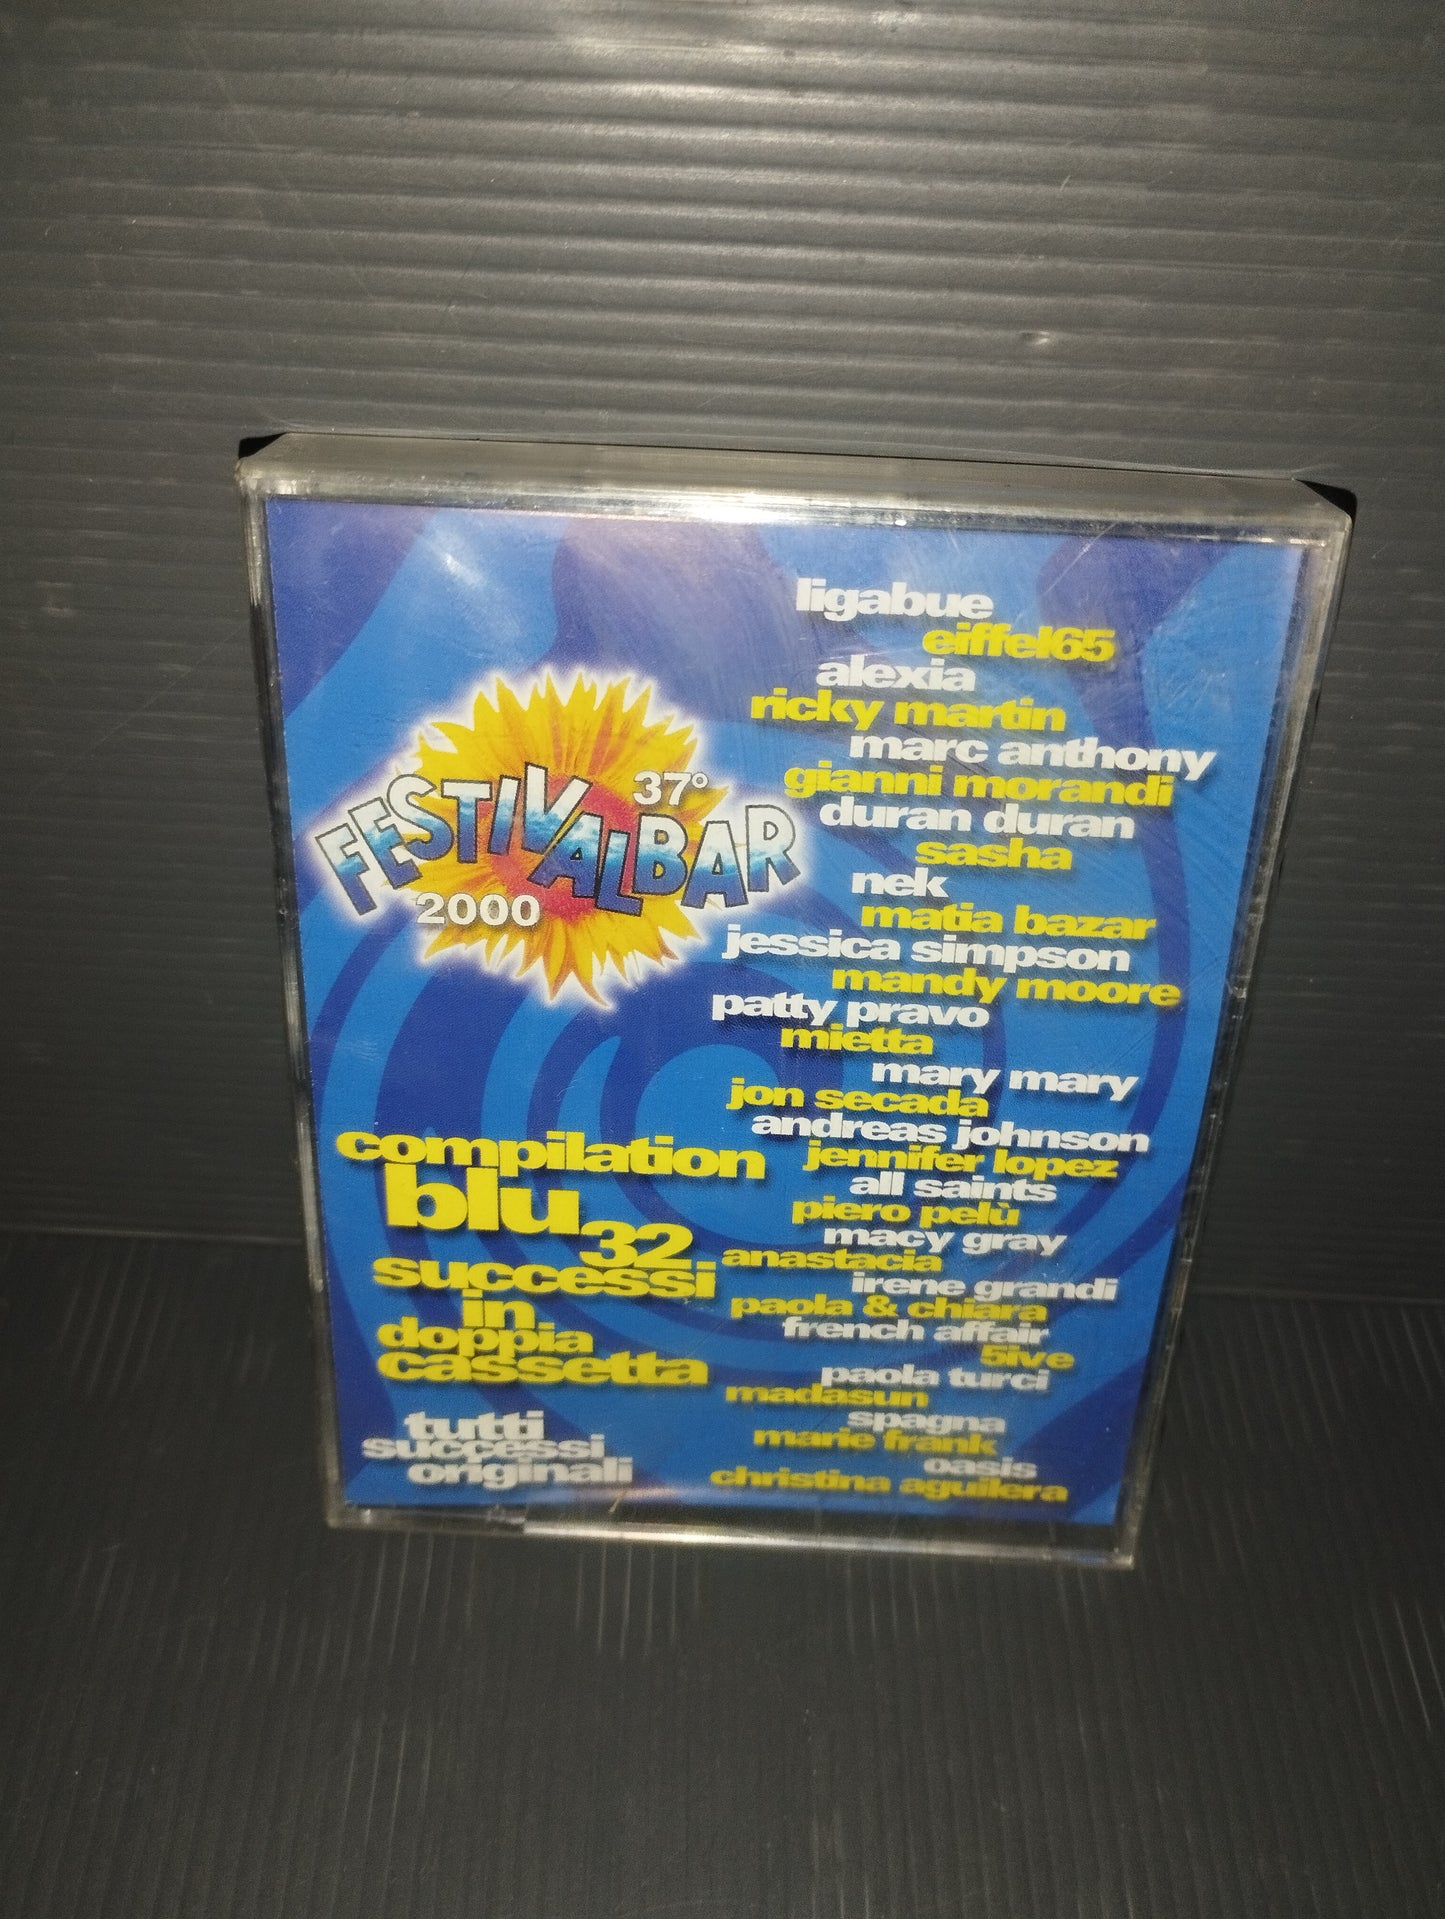 37° Festivalbar 2000 Compilation blu 2 Musicassette